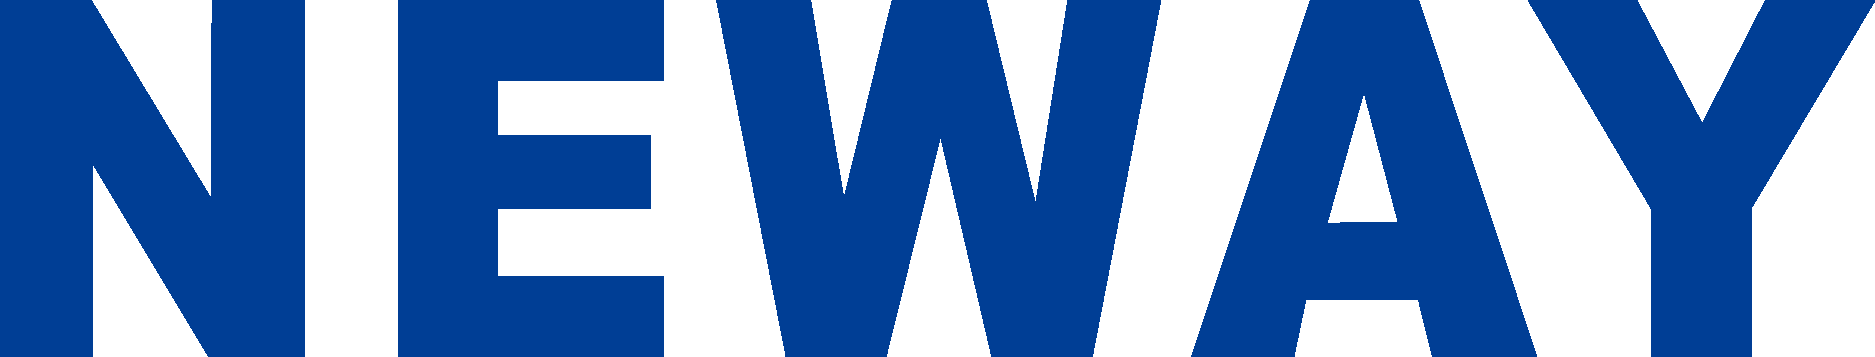 Neway Valve Wordmark Logo Vector